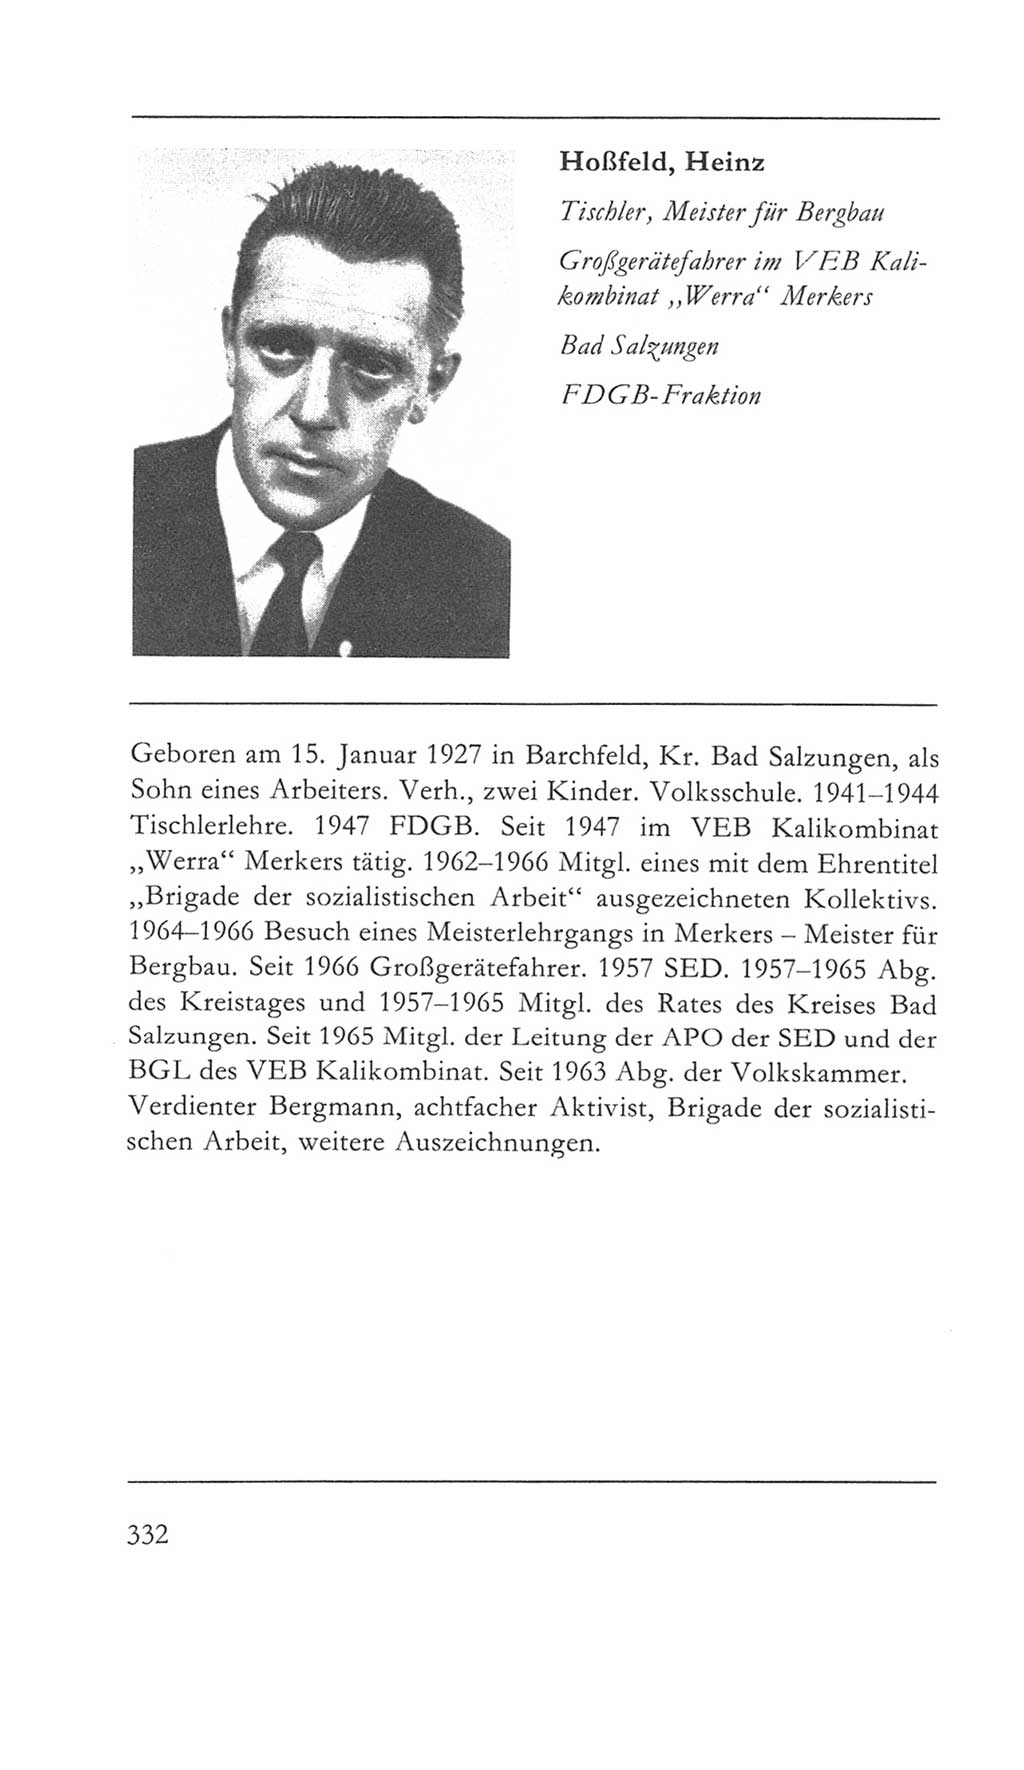 Volkskammer (VK) der Deutschen Demokratischen Republik (DDR) 5. Wahlperiode 1967-1971, Seite 332 (VK. DDR 5. WP. 1967-1971, S. 332)